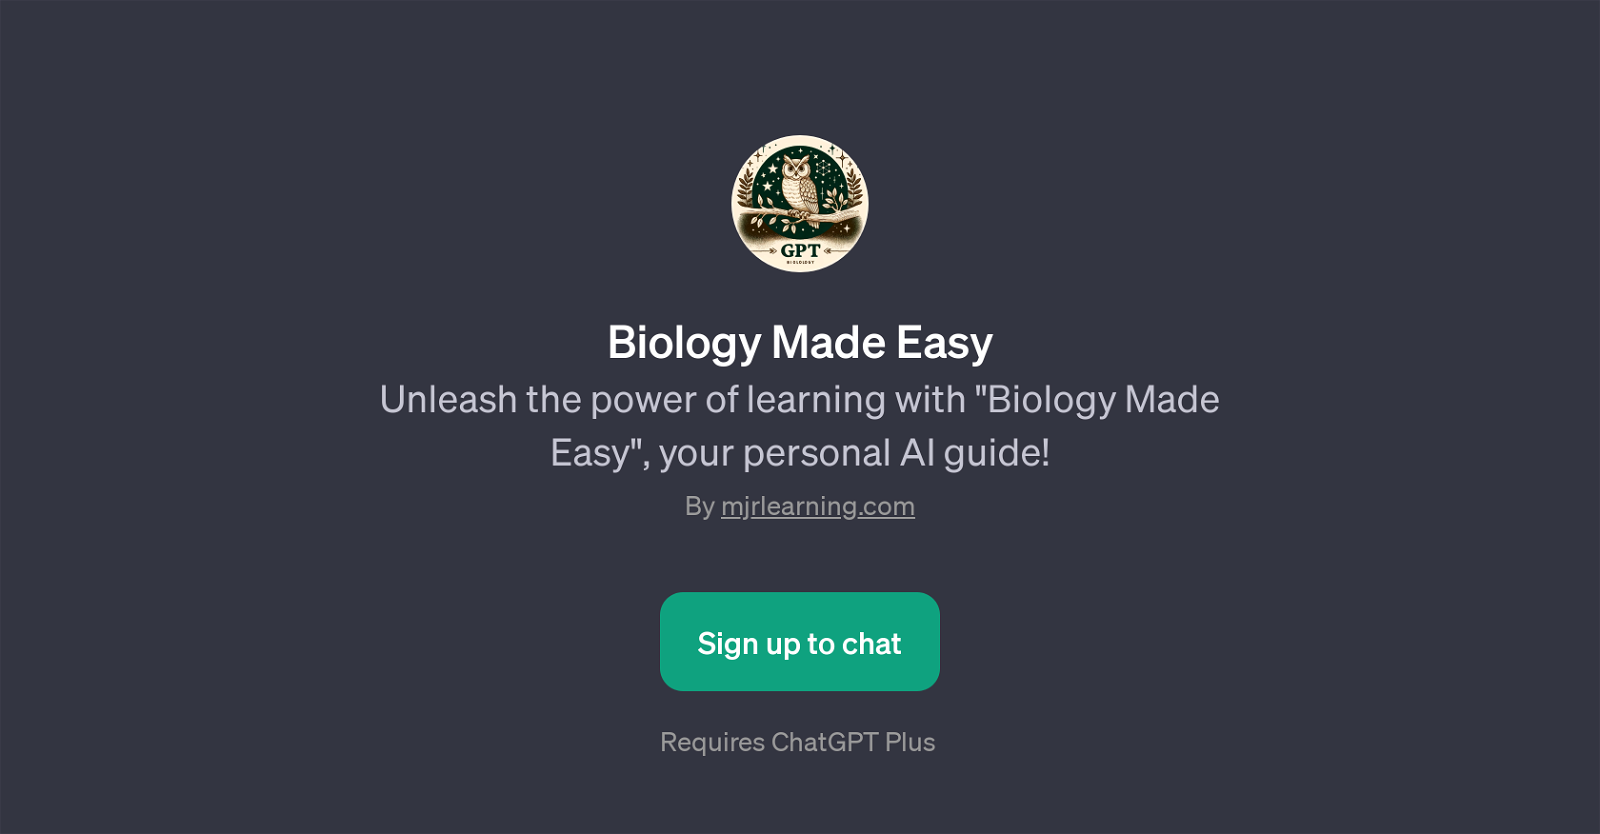 Biology Made Easy website